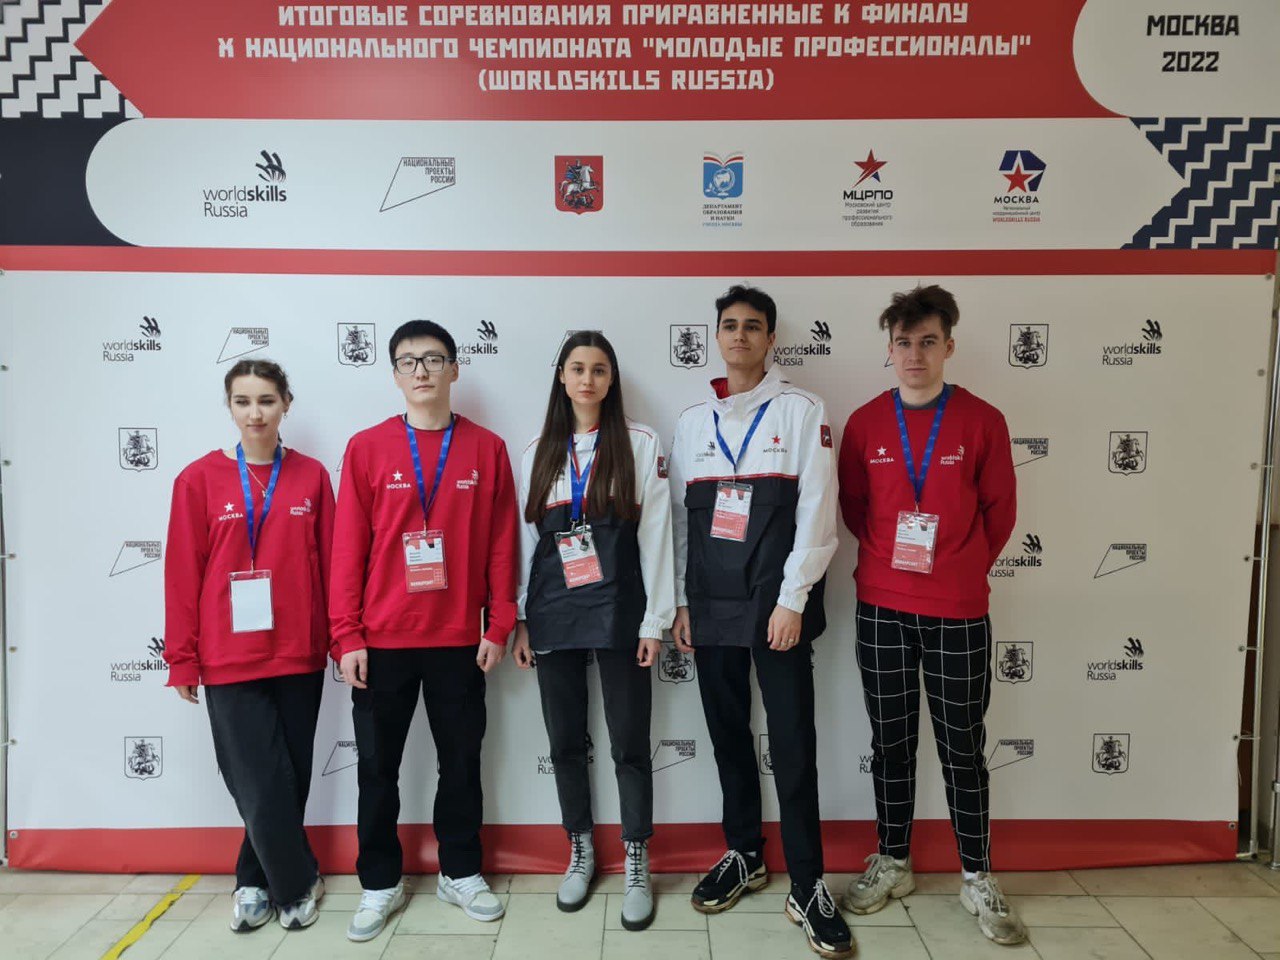 Якутяне принесли первые медали WorldSkills Russia в копилку сборной региона